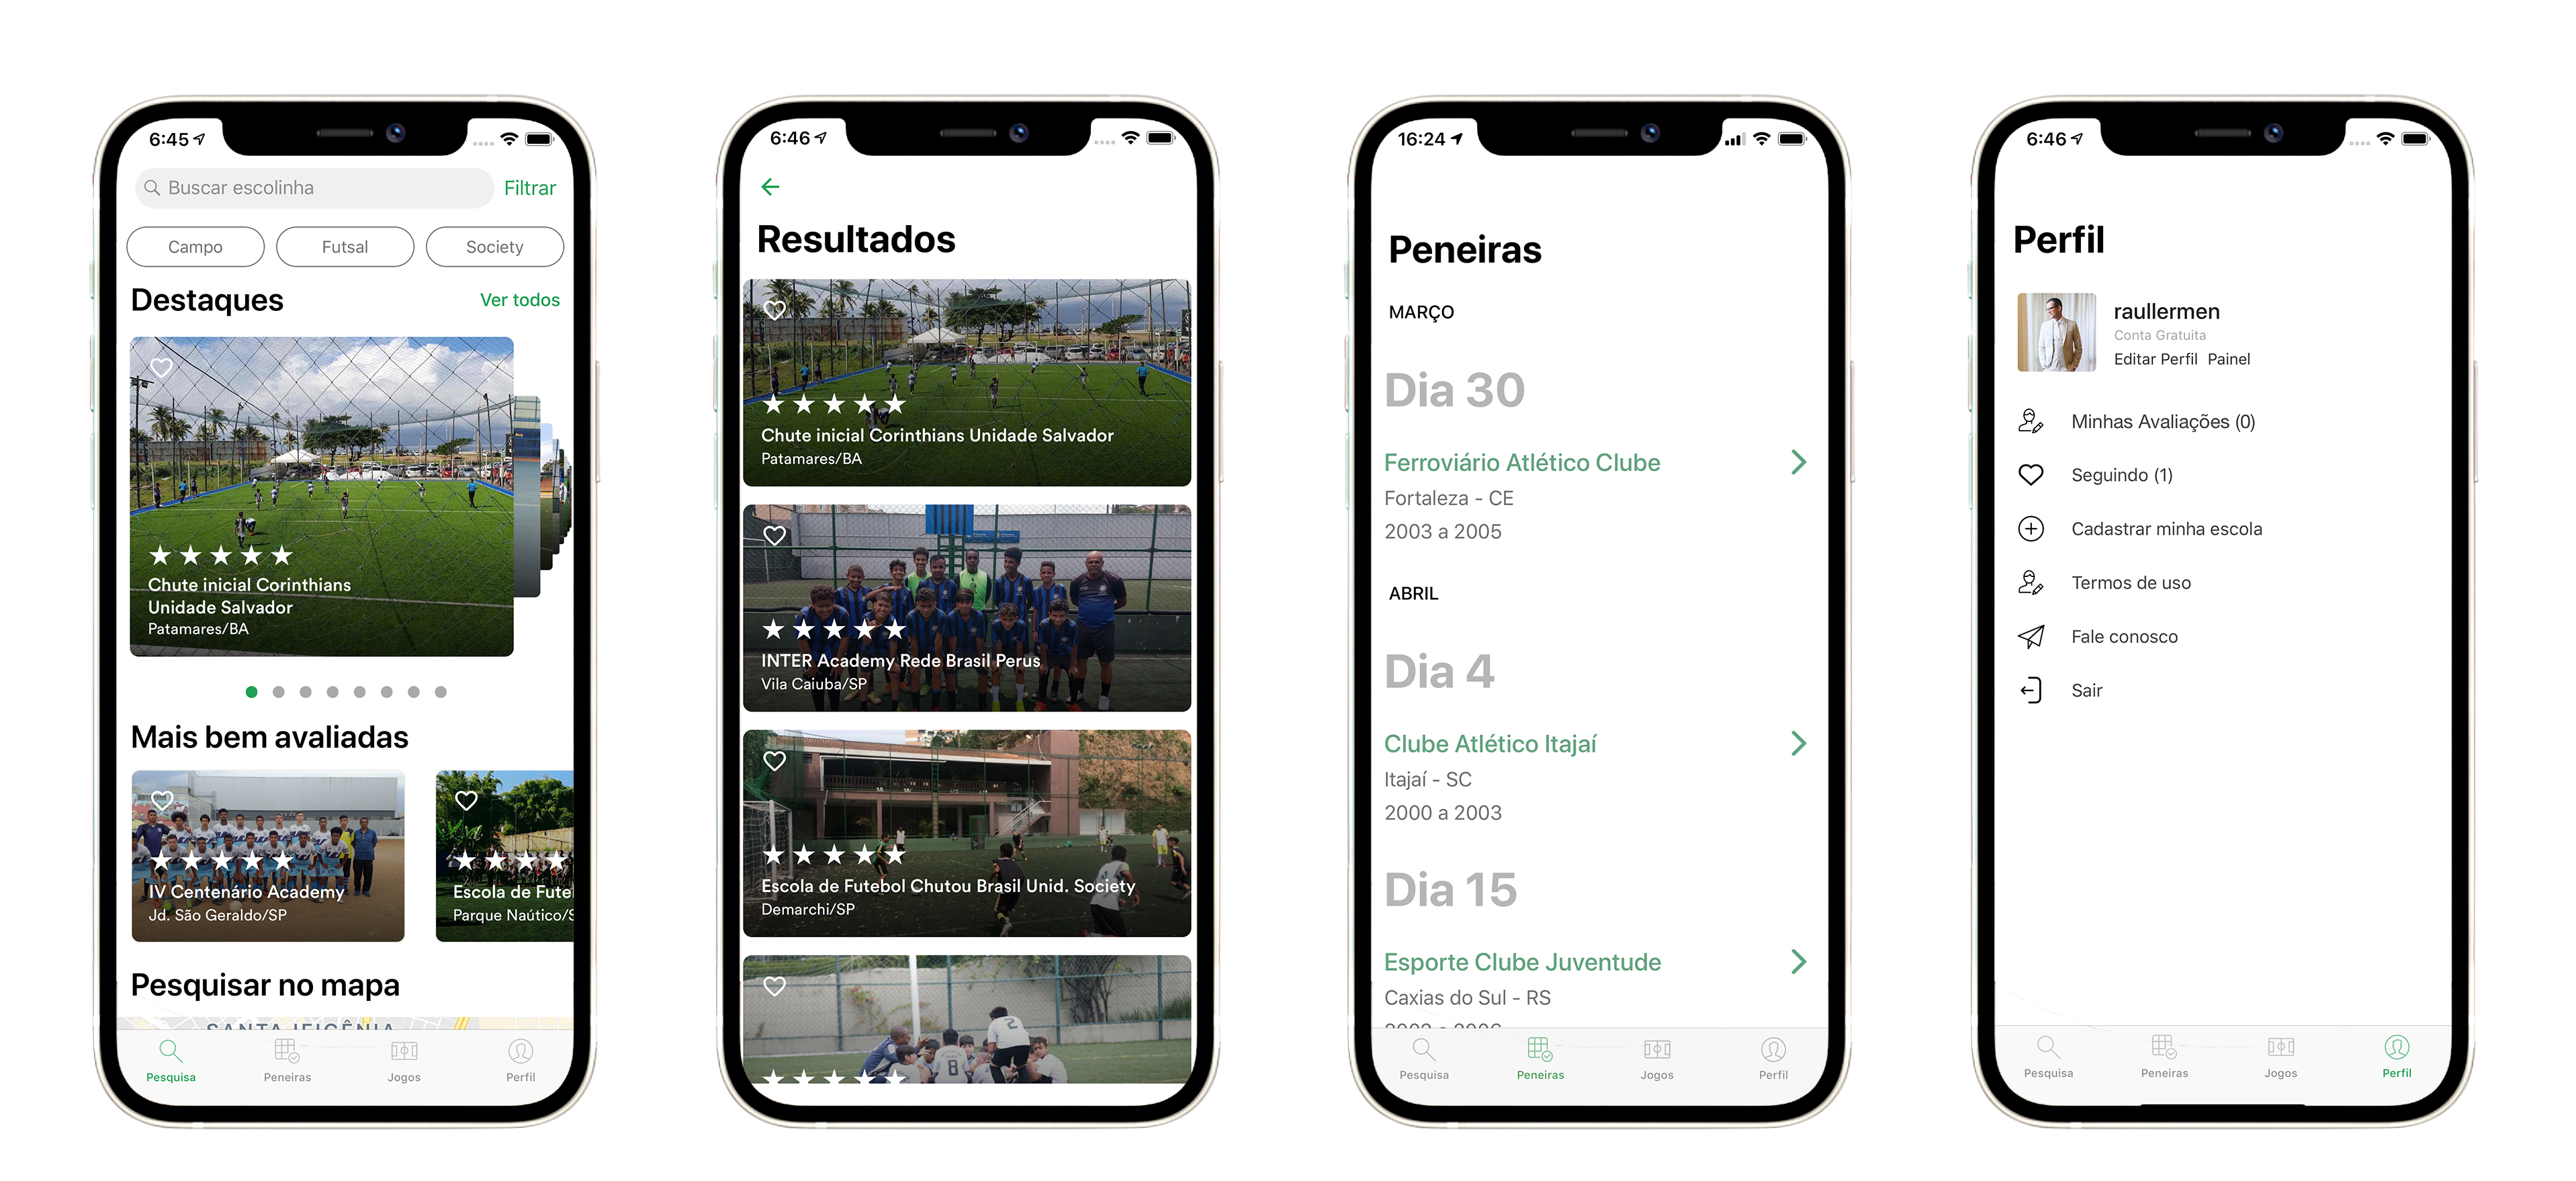 iScolinha FC app screenshots